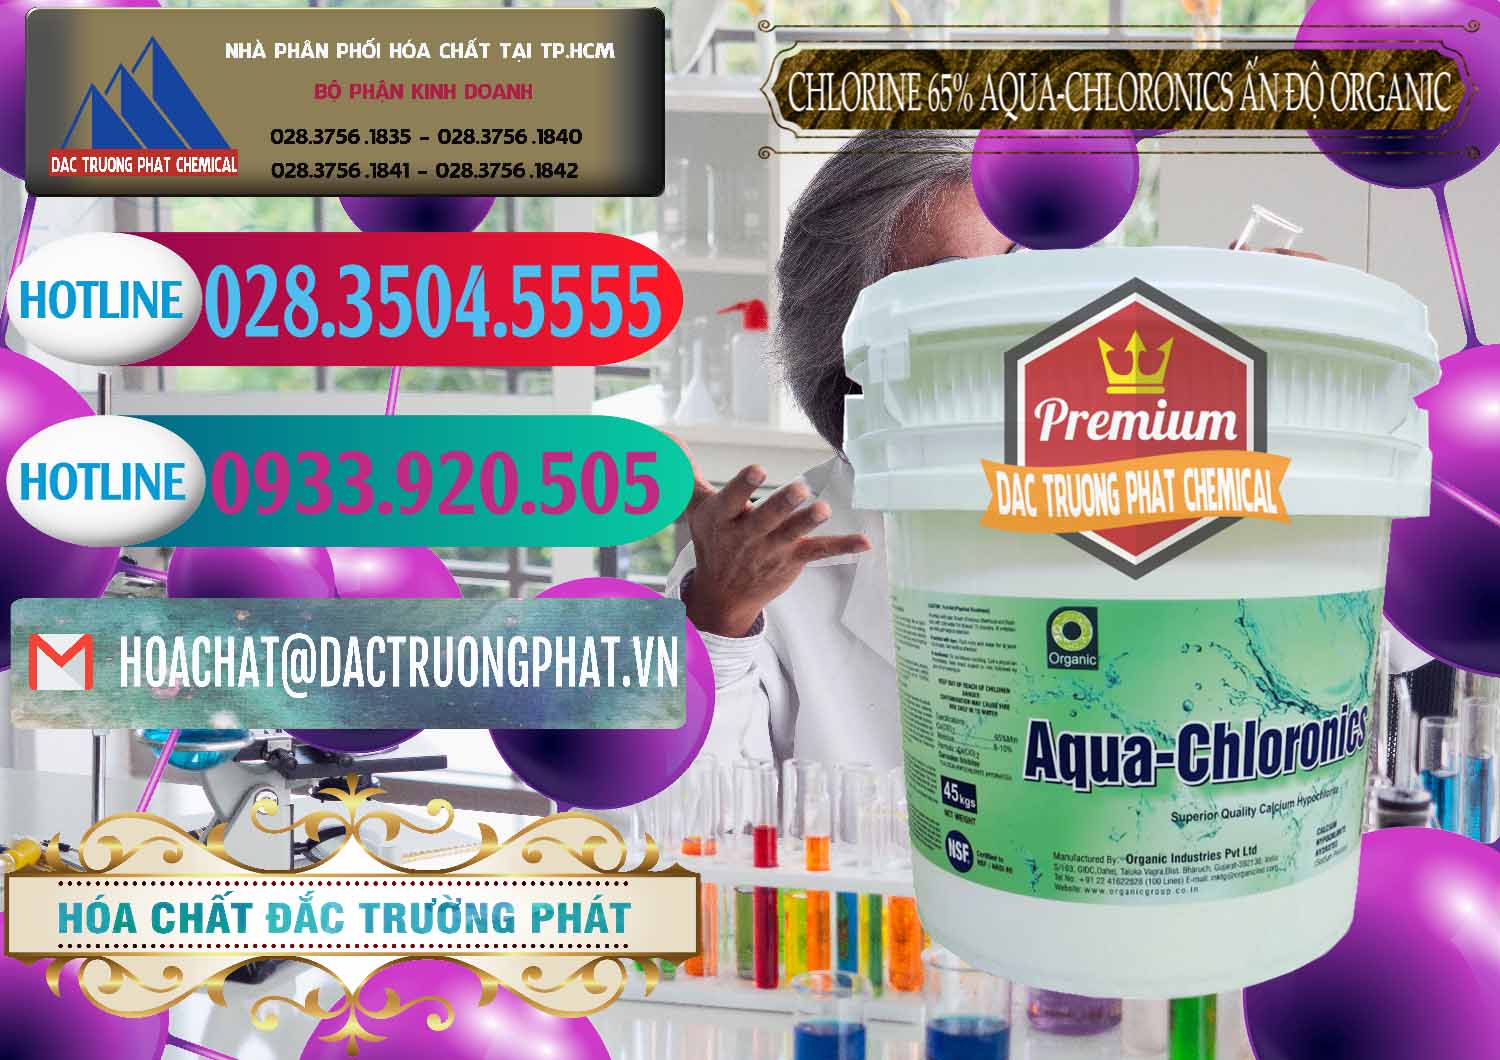 Nhà phân phối - bán Chlorine – Clorin 65% Aqua-Chloronics Ấn Độ Organic India - 0210 - Công ty phân phối & cung cấp hóa chất tại TP.HCM - truongphat.vn